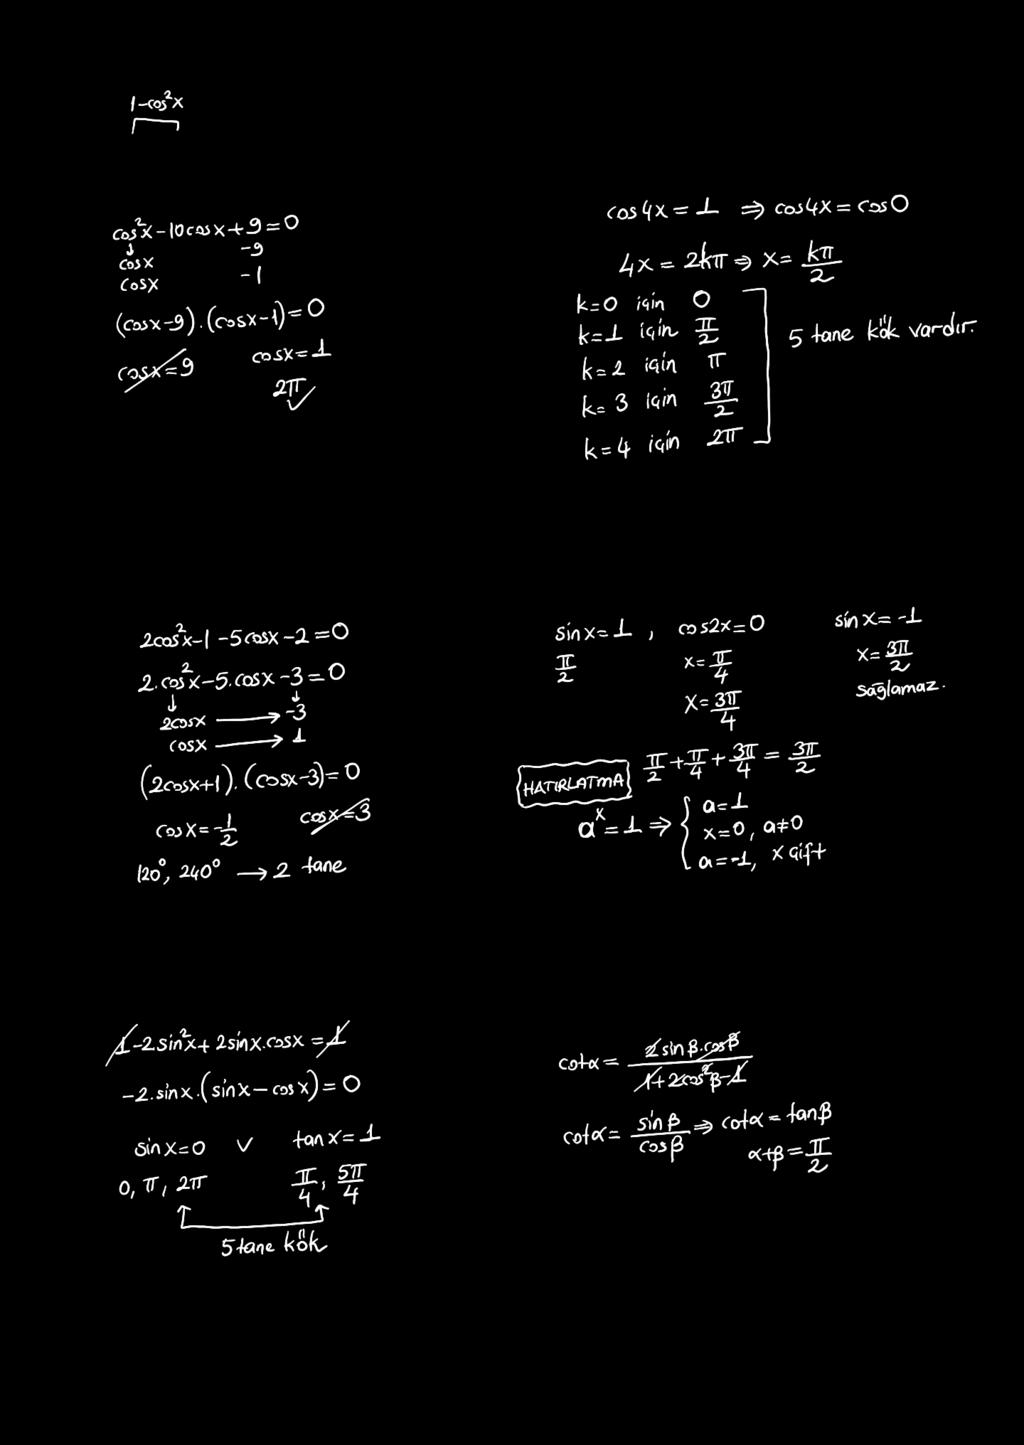 TGOOMTK KM 7. sin + 0cos 0 = 0 denkleminin <, F aalığındaki kökü kaç adyandı? 0. cos sin = denkleminin [0, p] aalığında kaç kökü vadı? 8. cos cos = 0 denkleminin [0, p) aalığında kaç kökü vadı?